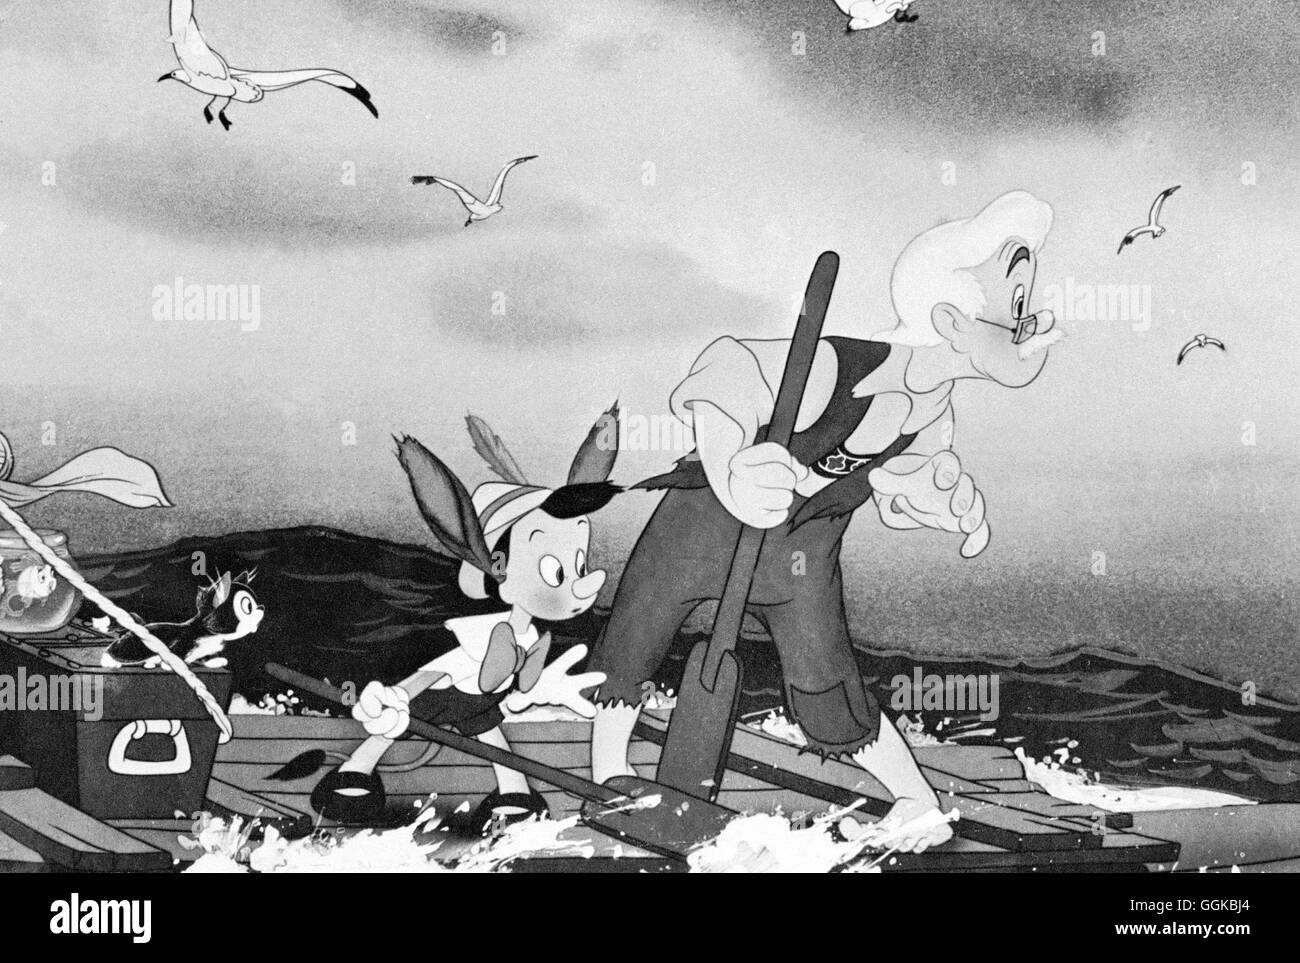 PINOCCHIO / Pinocchio USA 1940 / Hamilton Luske Szene aus Walt Disney's 'Pinocchio', 1940. Regie: Hamilton Luske aka. Pinocchio Stock Photo